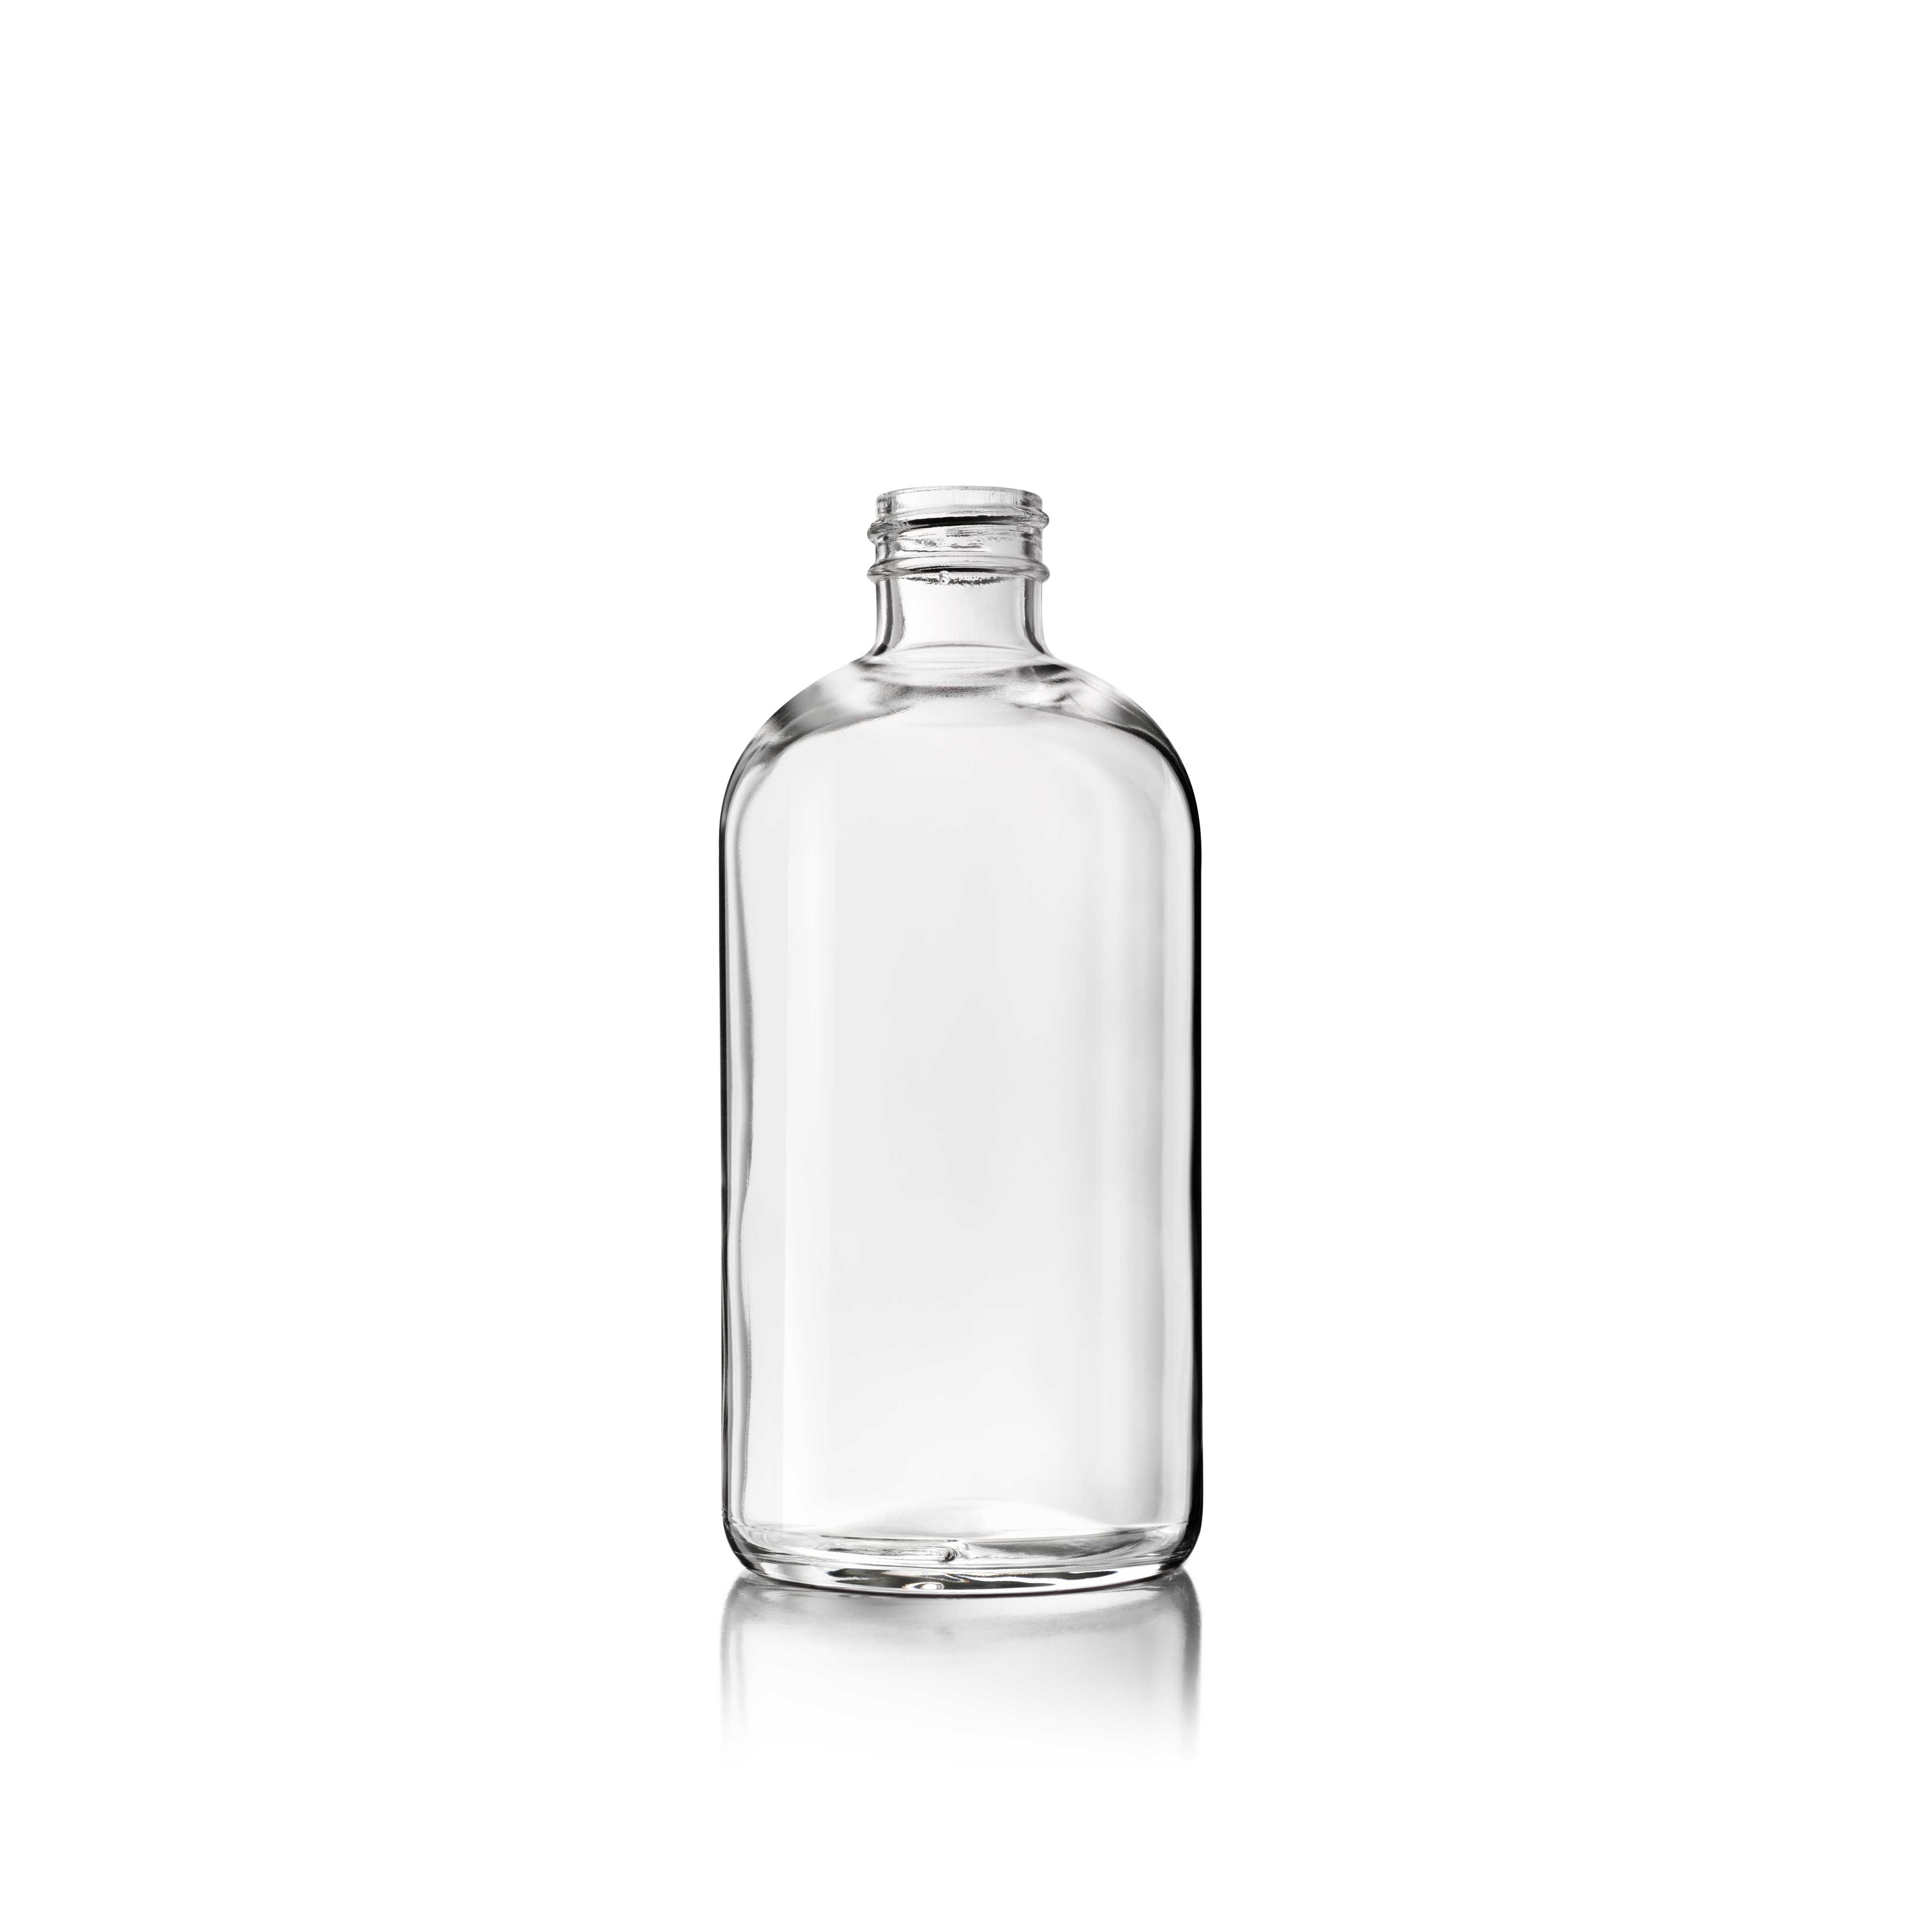 Cosmetic bottle Linden Light Weight 250 ml, 24/410, Flint